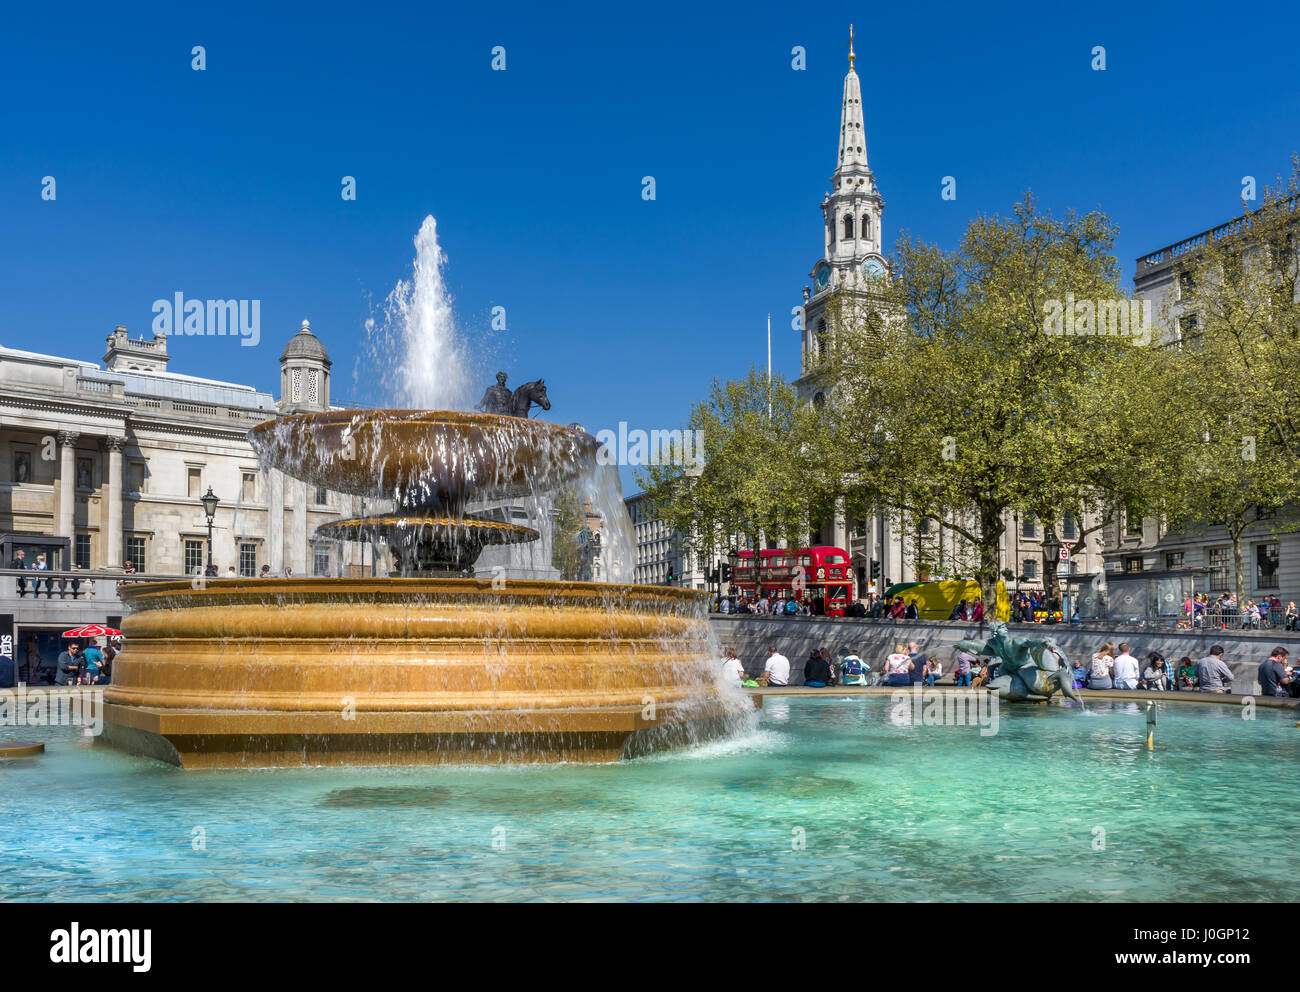 Trafalgar Square ist ein öffentlicher Platz in der City of Westminster, Central London. Es erinnert an die Schlacht von Trafalgar, die 1805 stattfand. Stockfoto